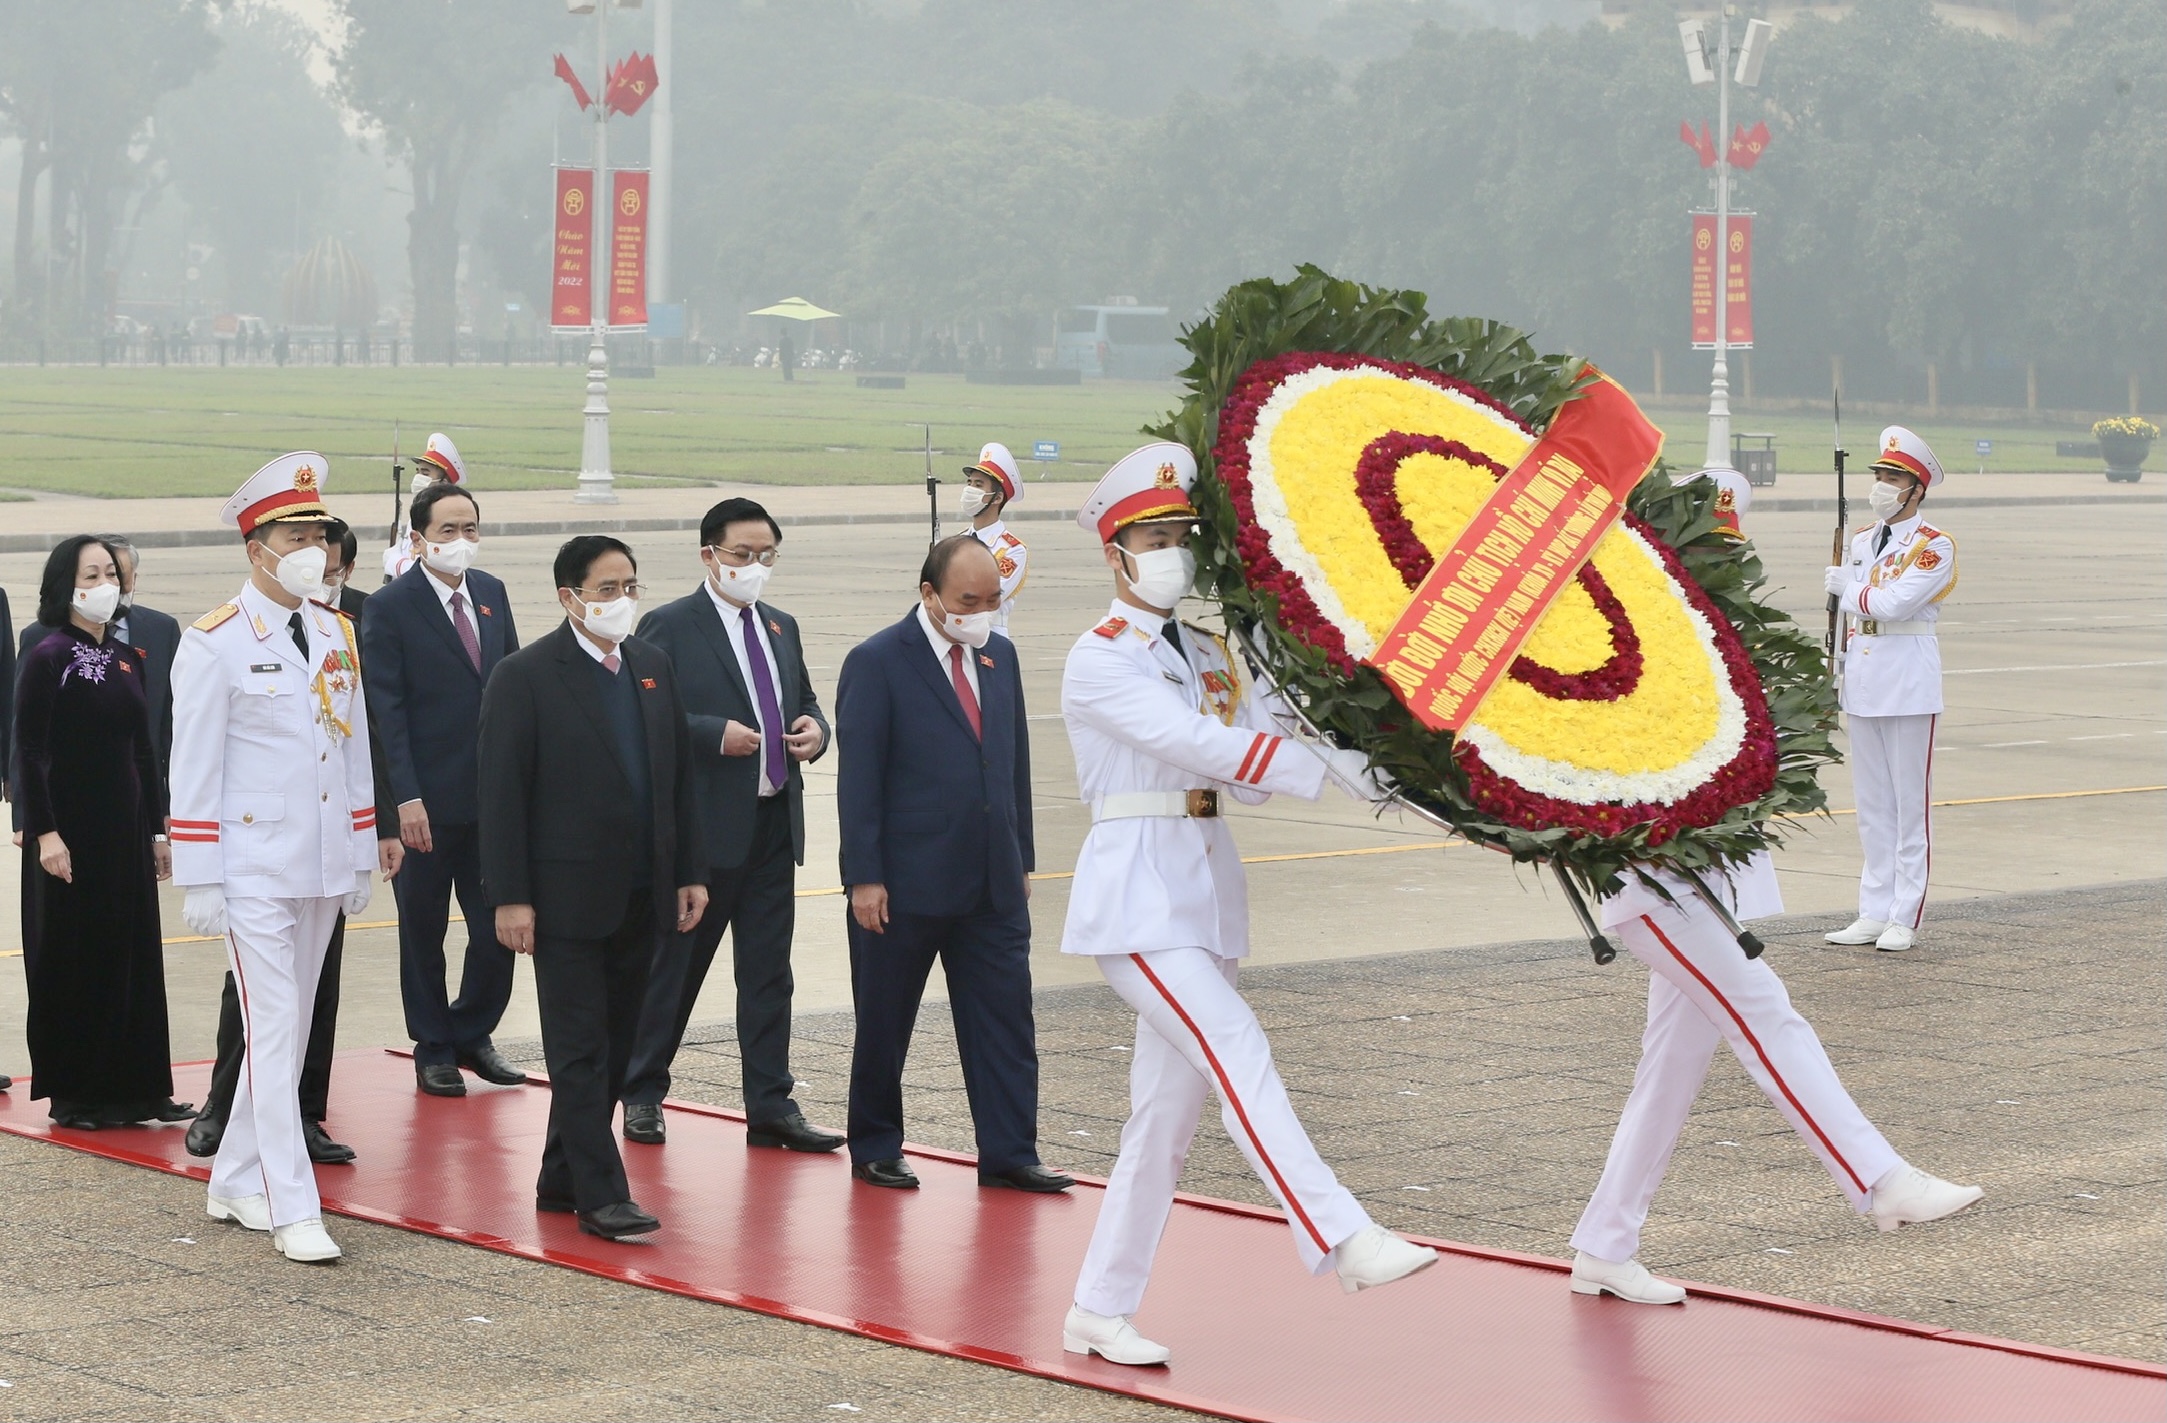 Chùm ảnh: Đại biểu Quốc hội vào Lăng viếng Chủ tịch Hồ Chí Minh